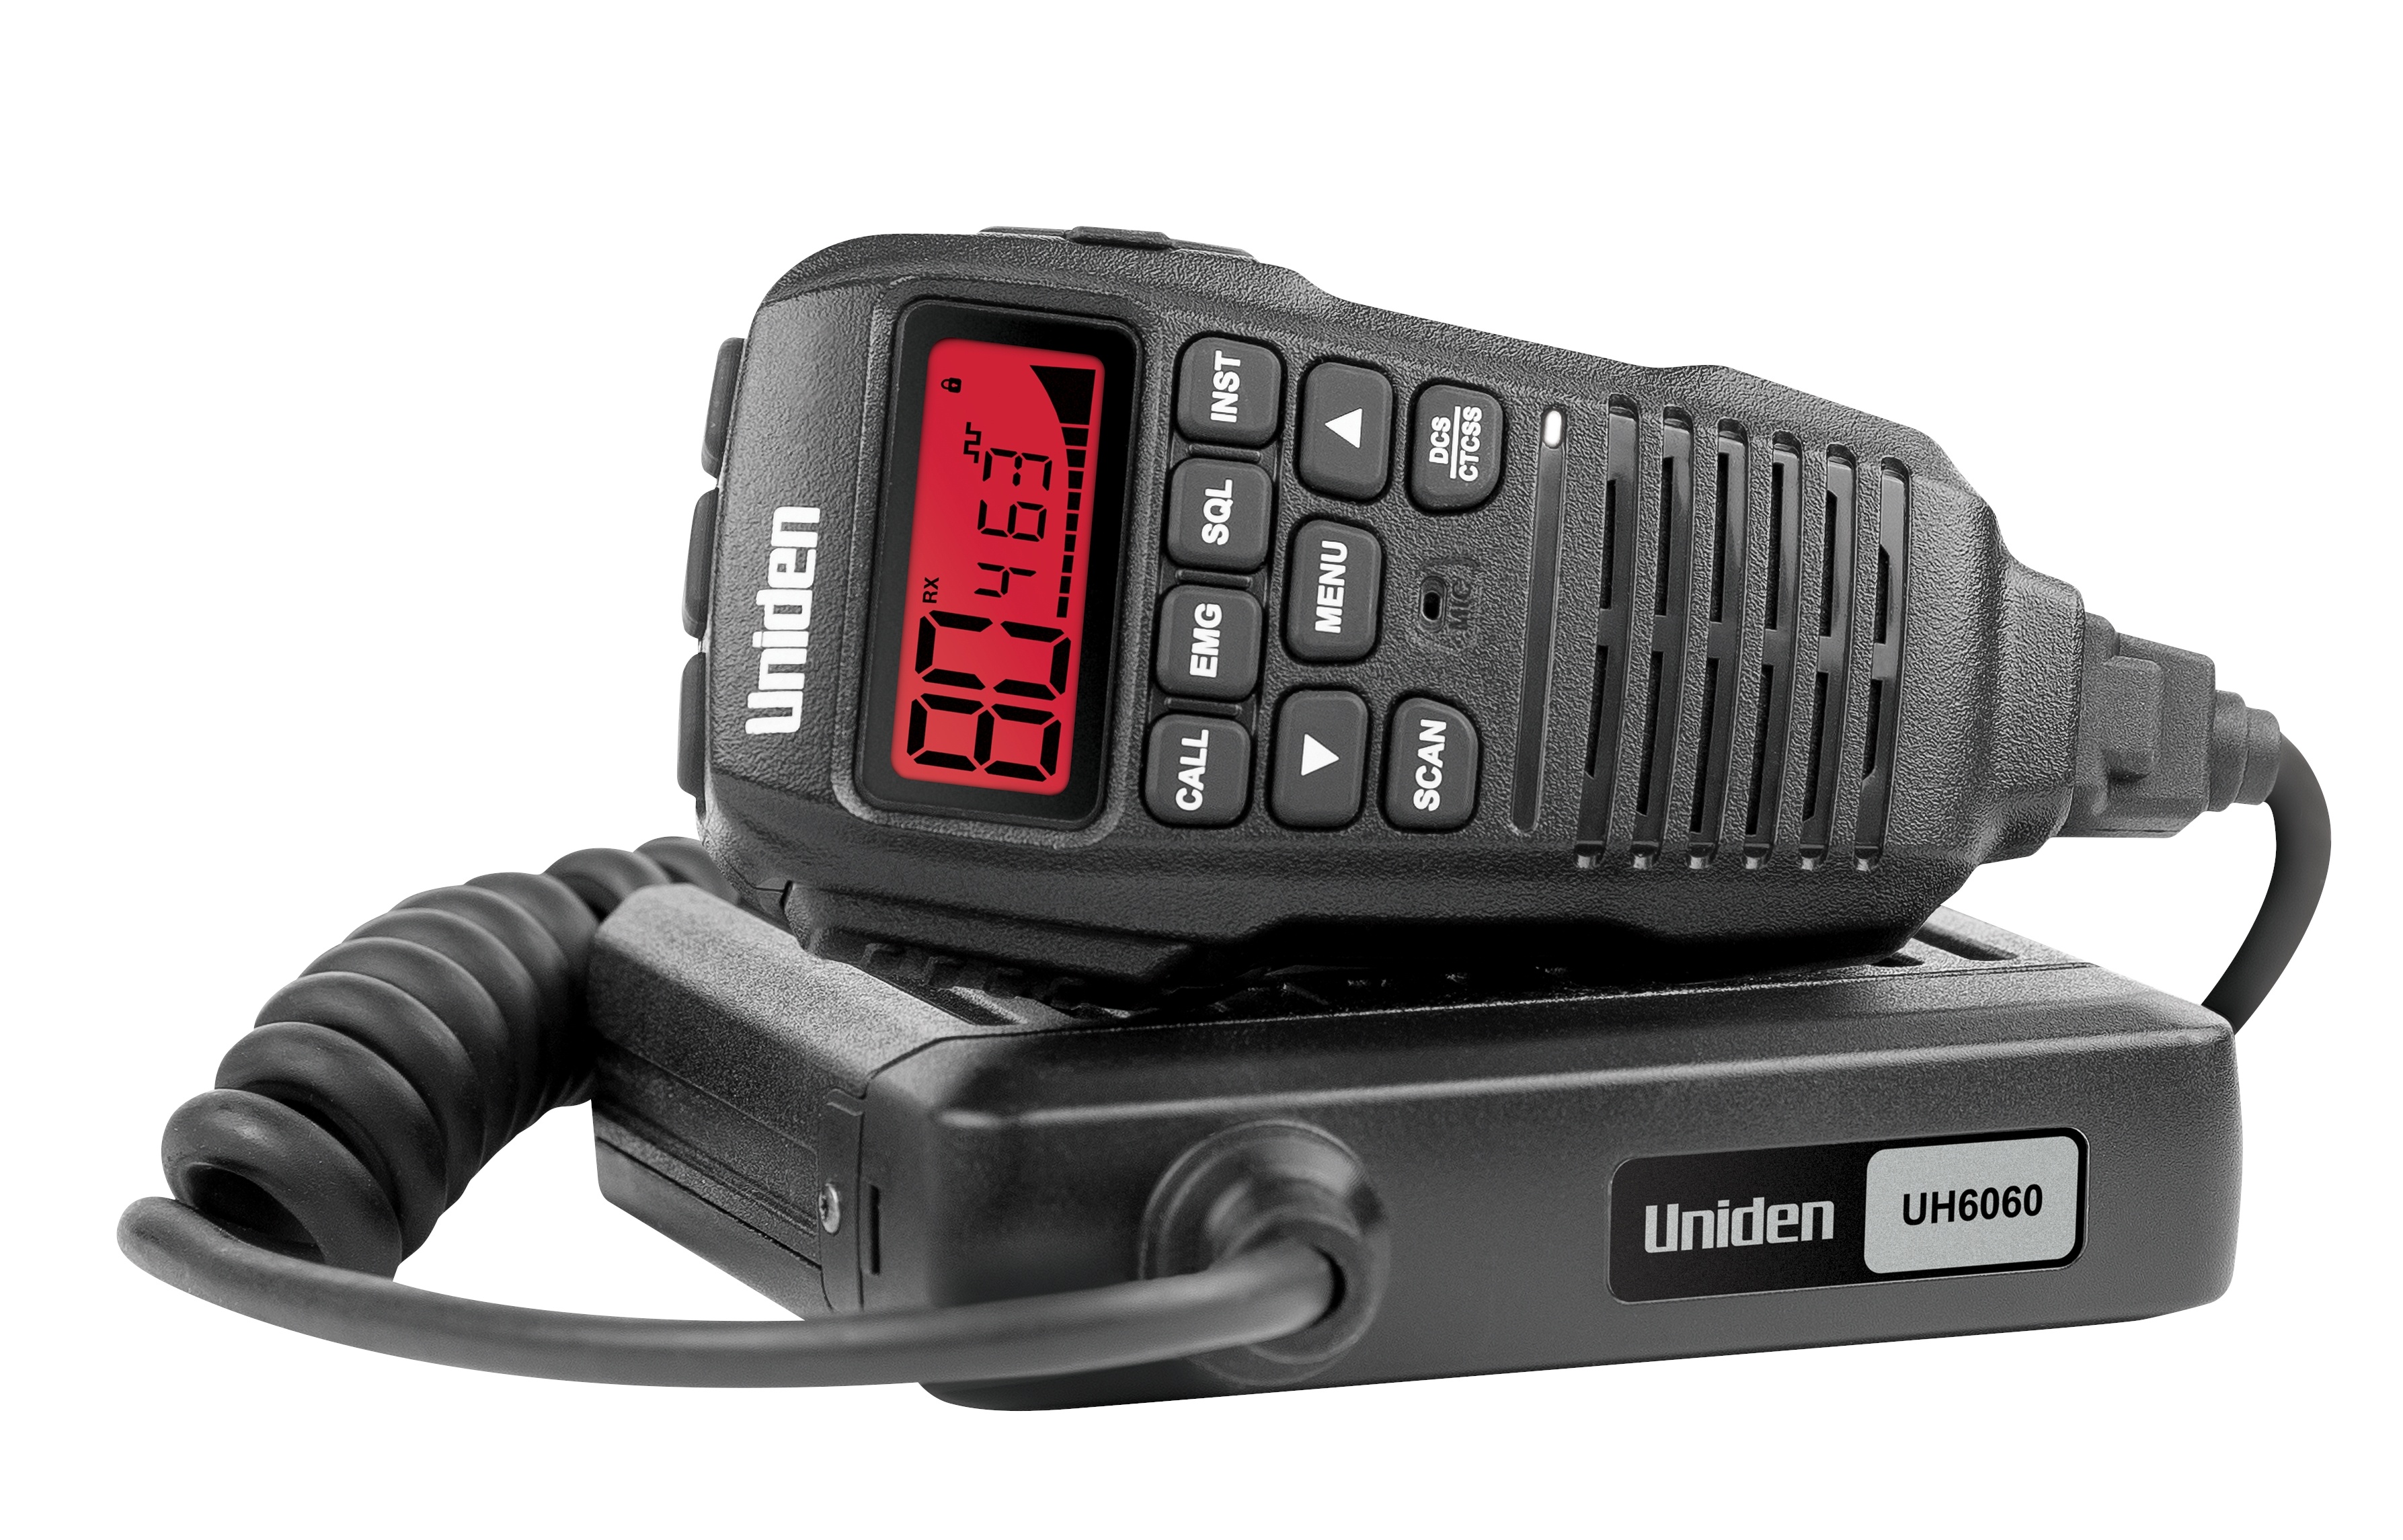 Uniden UH6060 UHF CB Mobile Radio